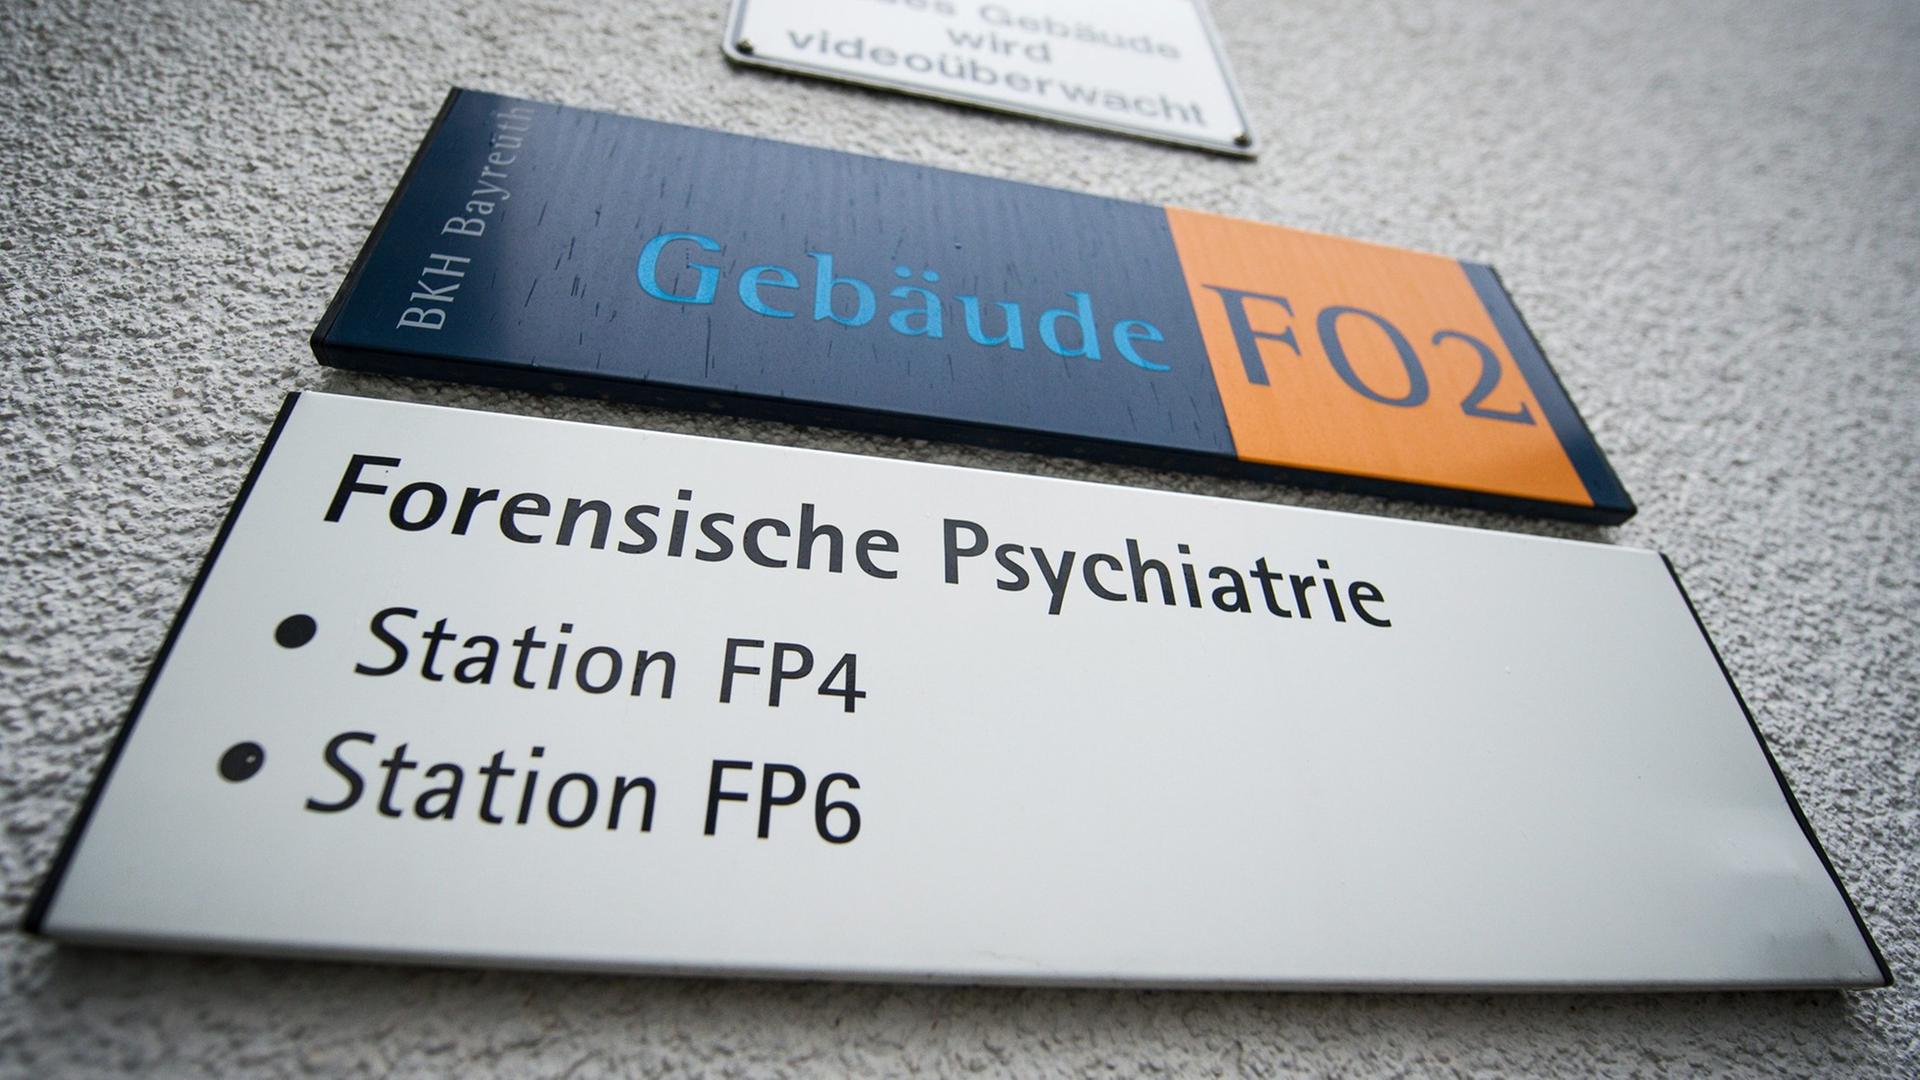 Ein Schild mit der Aufschrift "Forensische Psychiatrie" hängt an einem Stationsgebäude des Bezirkskrankenhauses in Bayreuth.